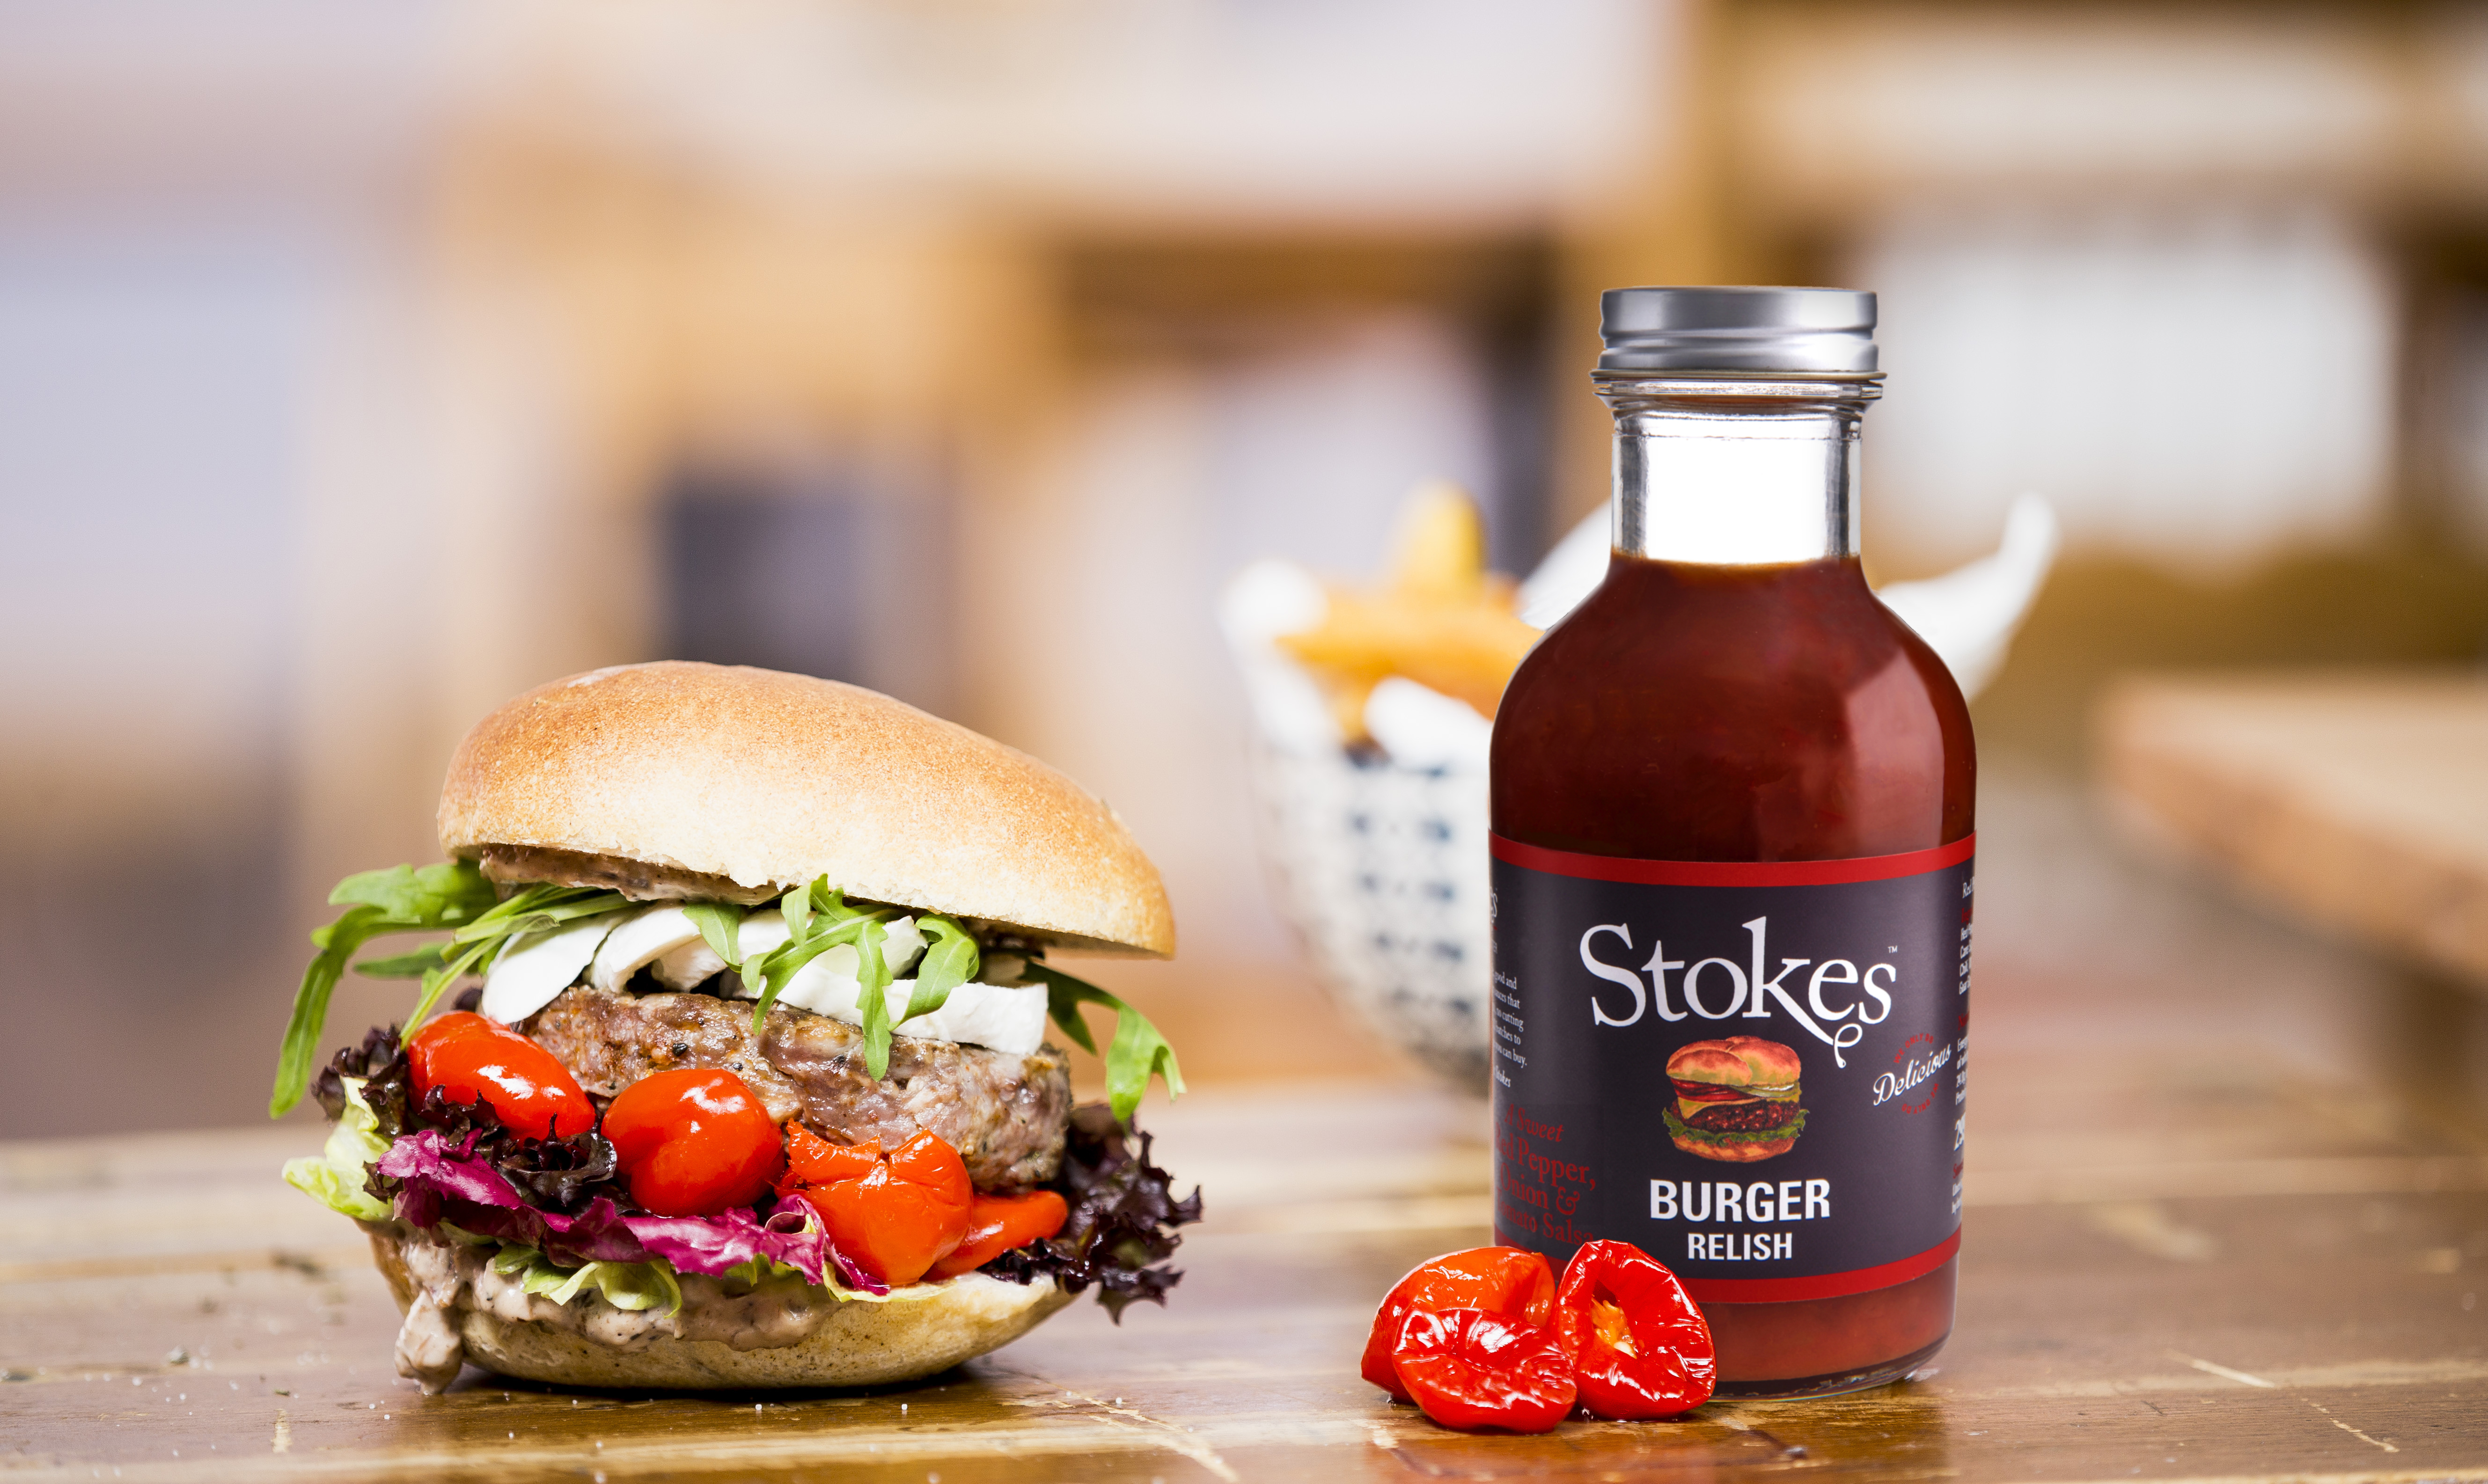 Stokes Burger Relish – NEU bei Coop erhältlich!